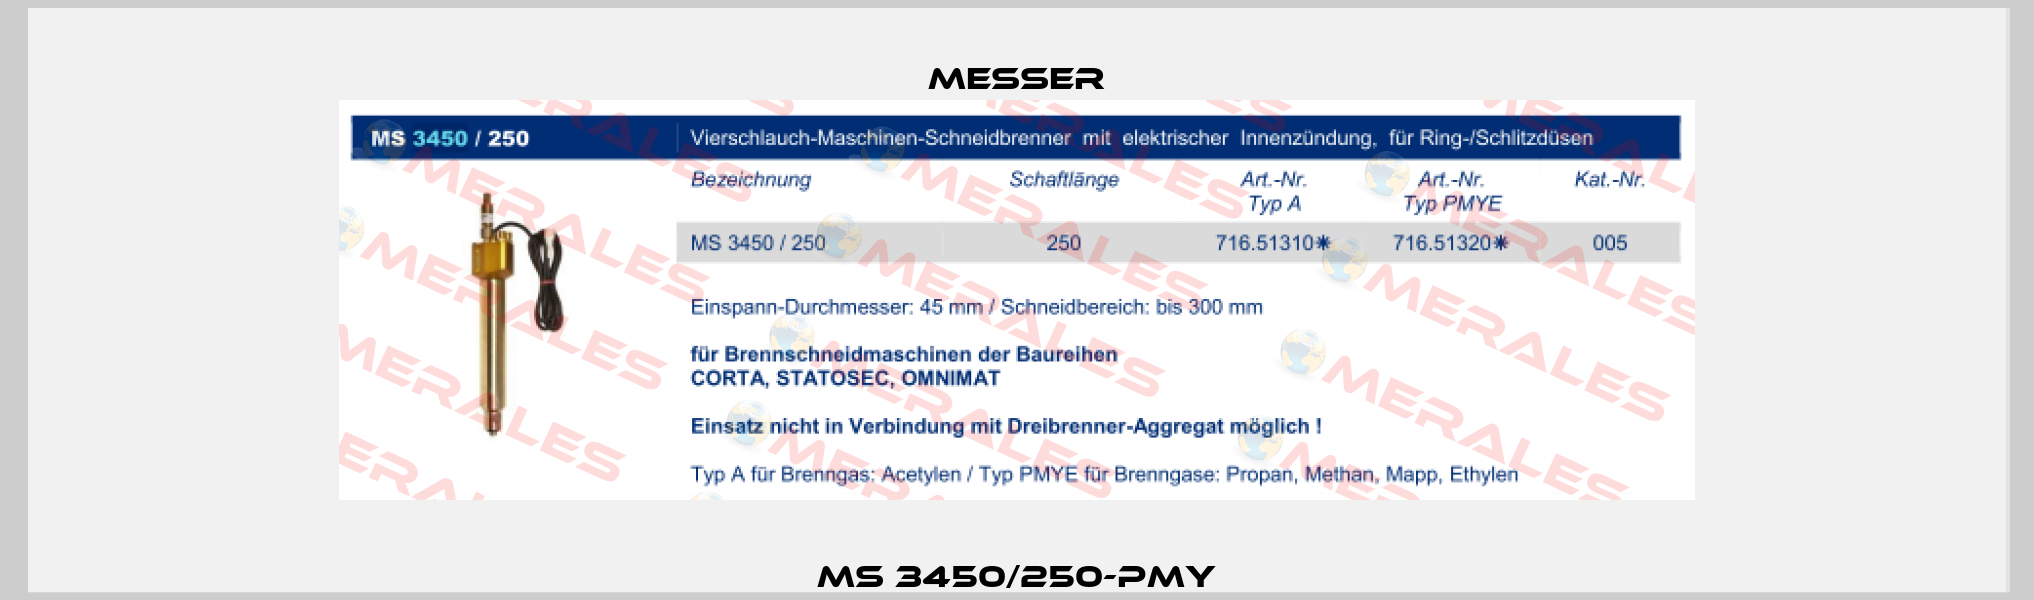 MS 3450/250-PMY Messer